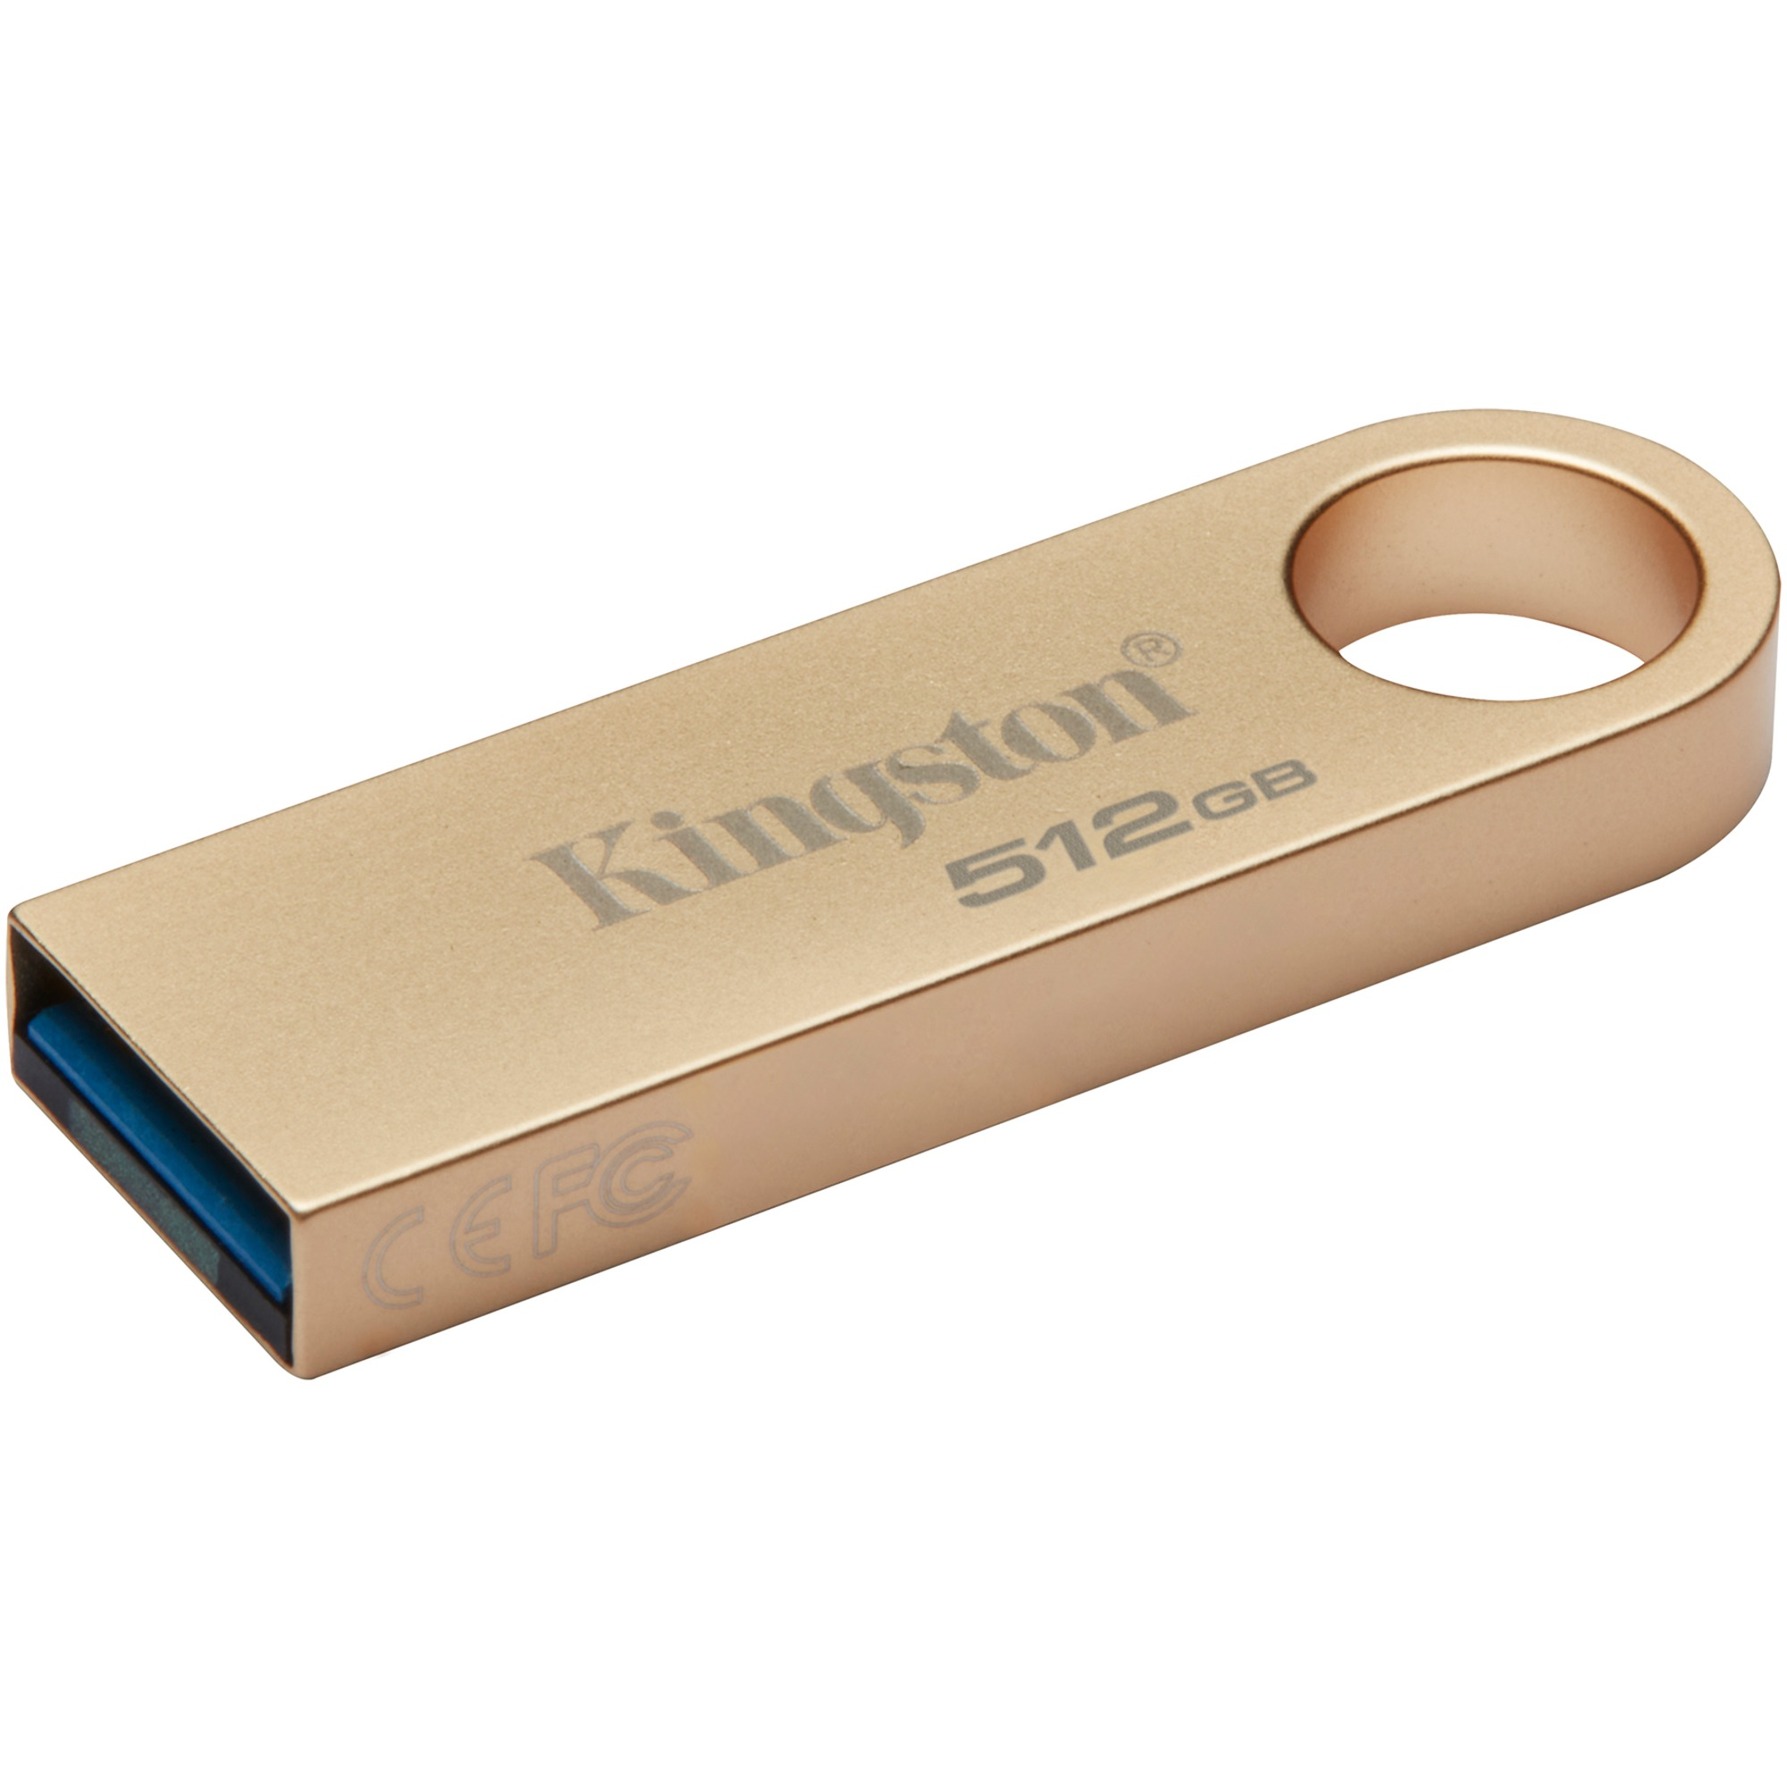 DataTraveler SE9 G3 512 GB, USB-Stick von Kingston